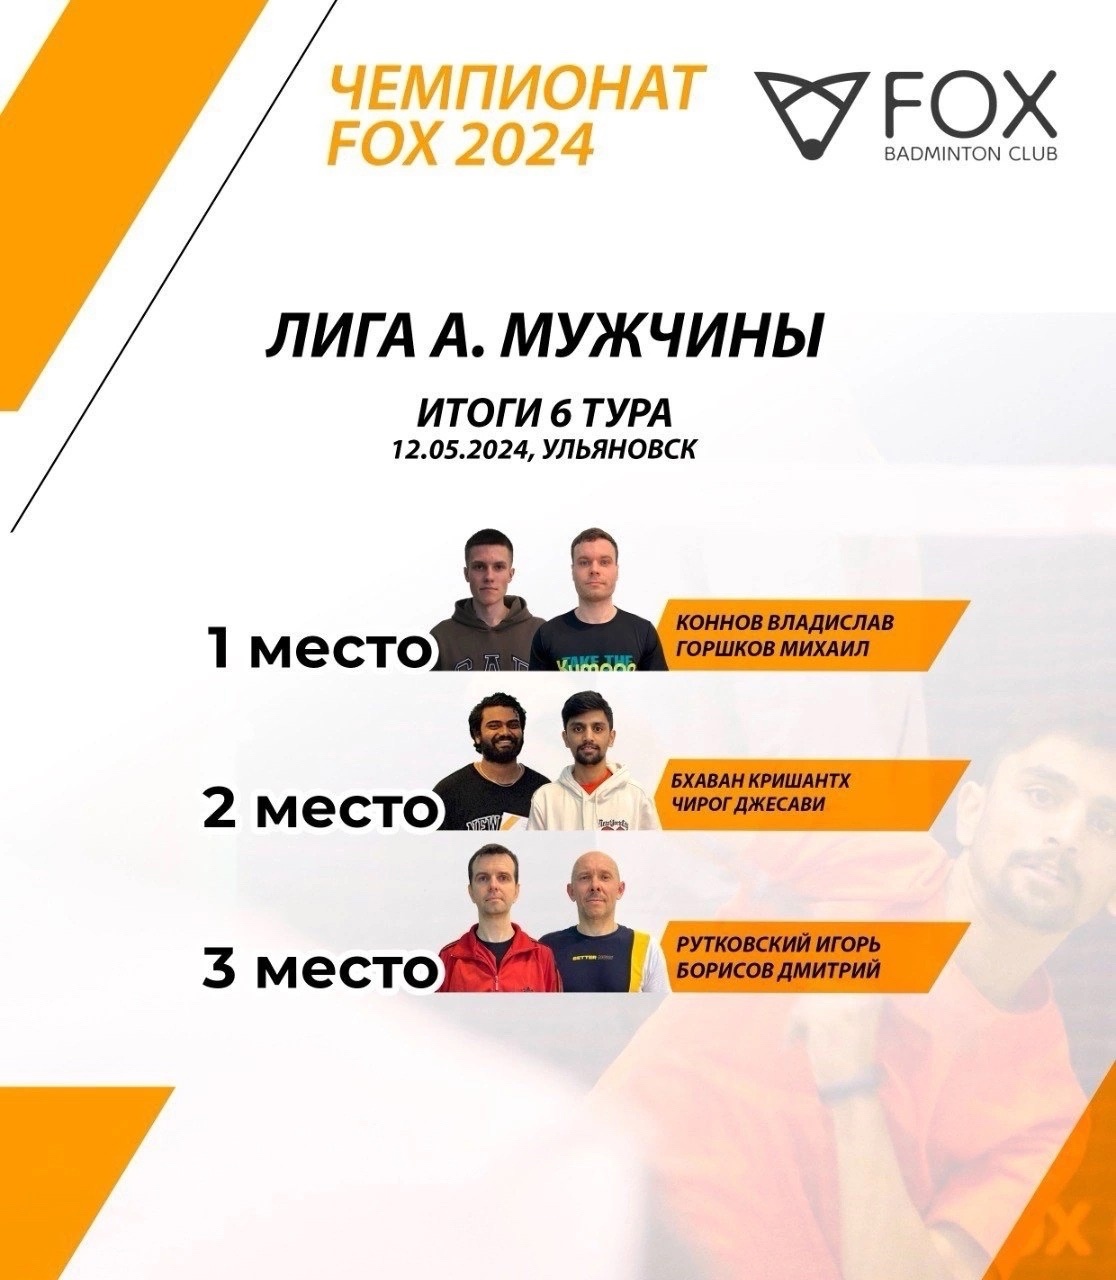  изображение для новости Бадминтонисты УлГУ - лидеры Чемпионата FOX-клуба